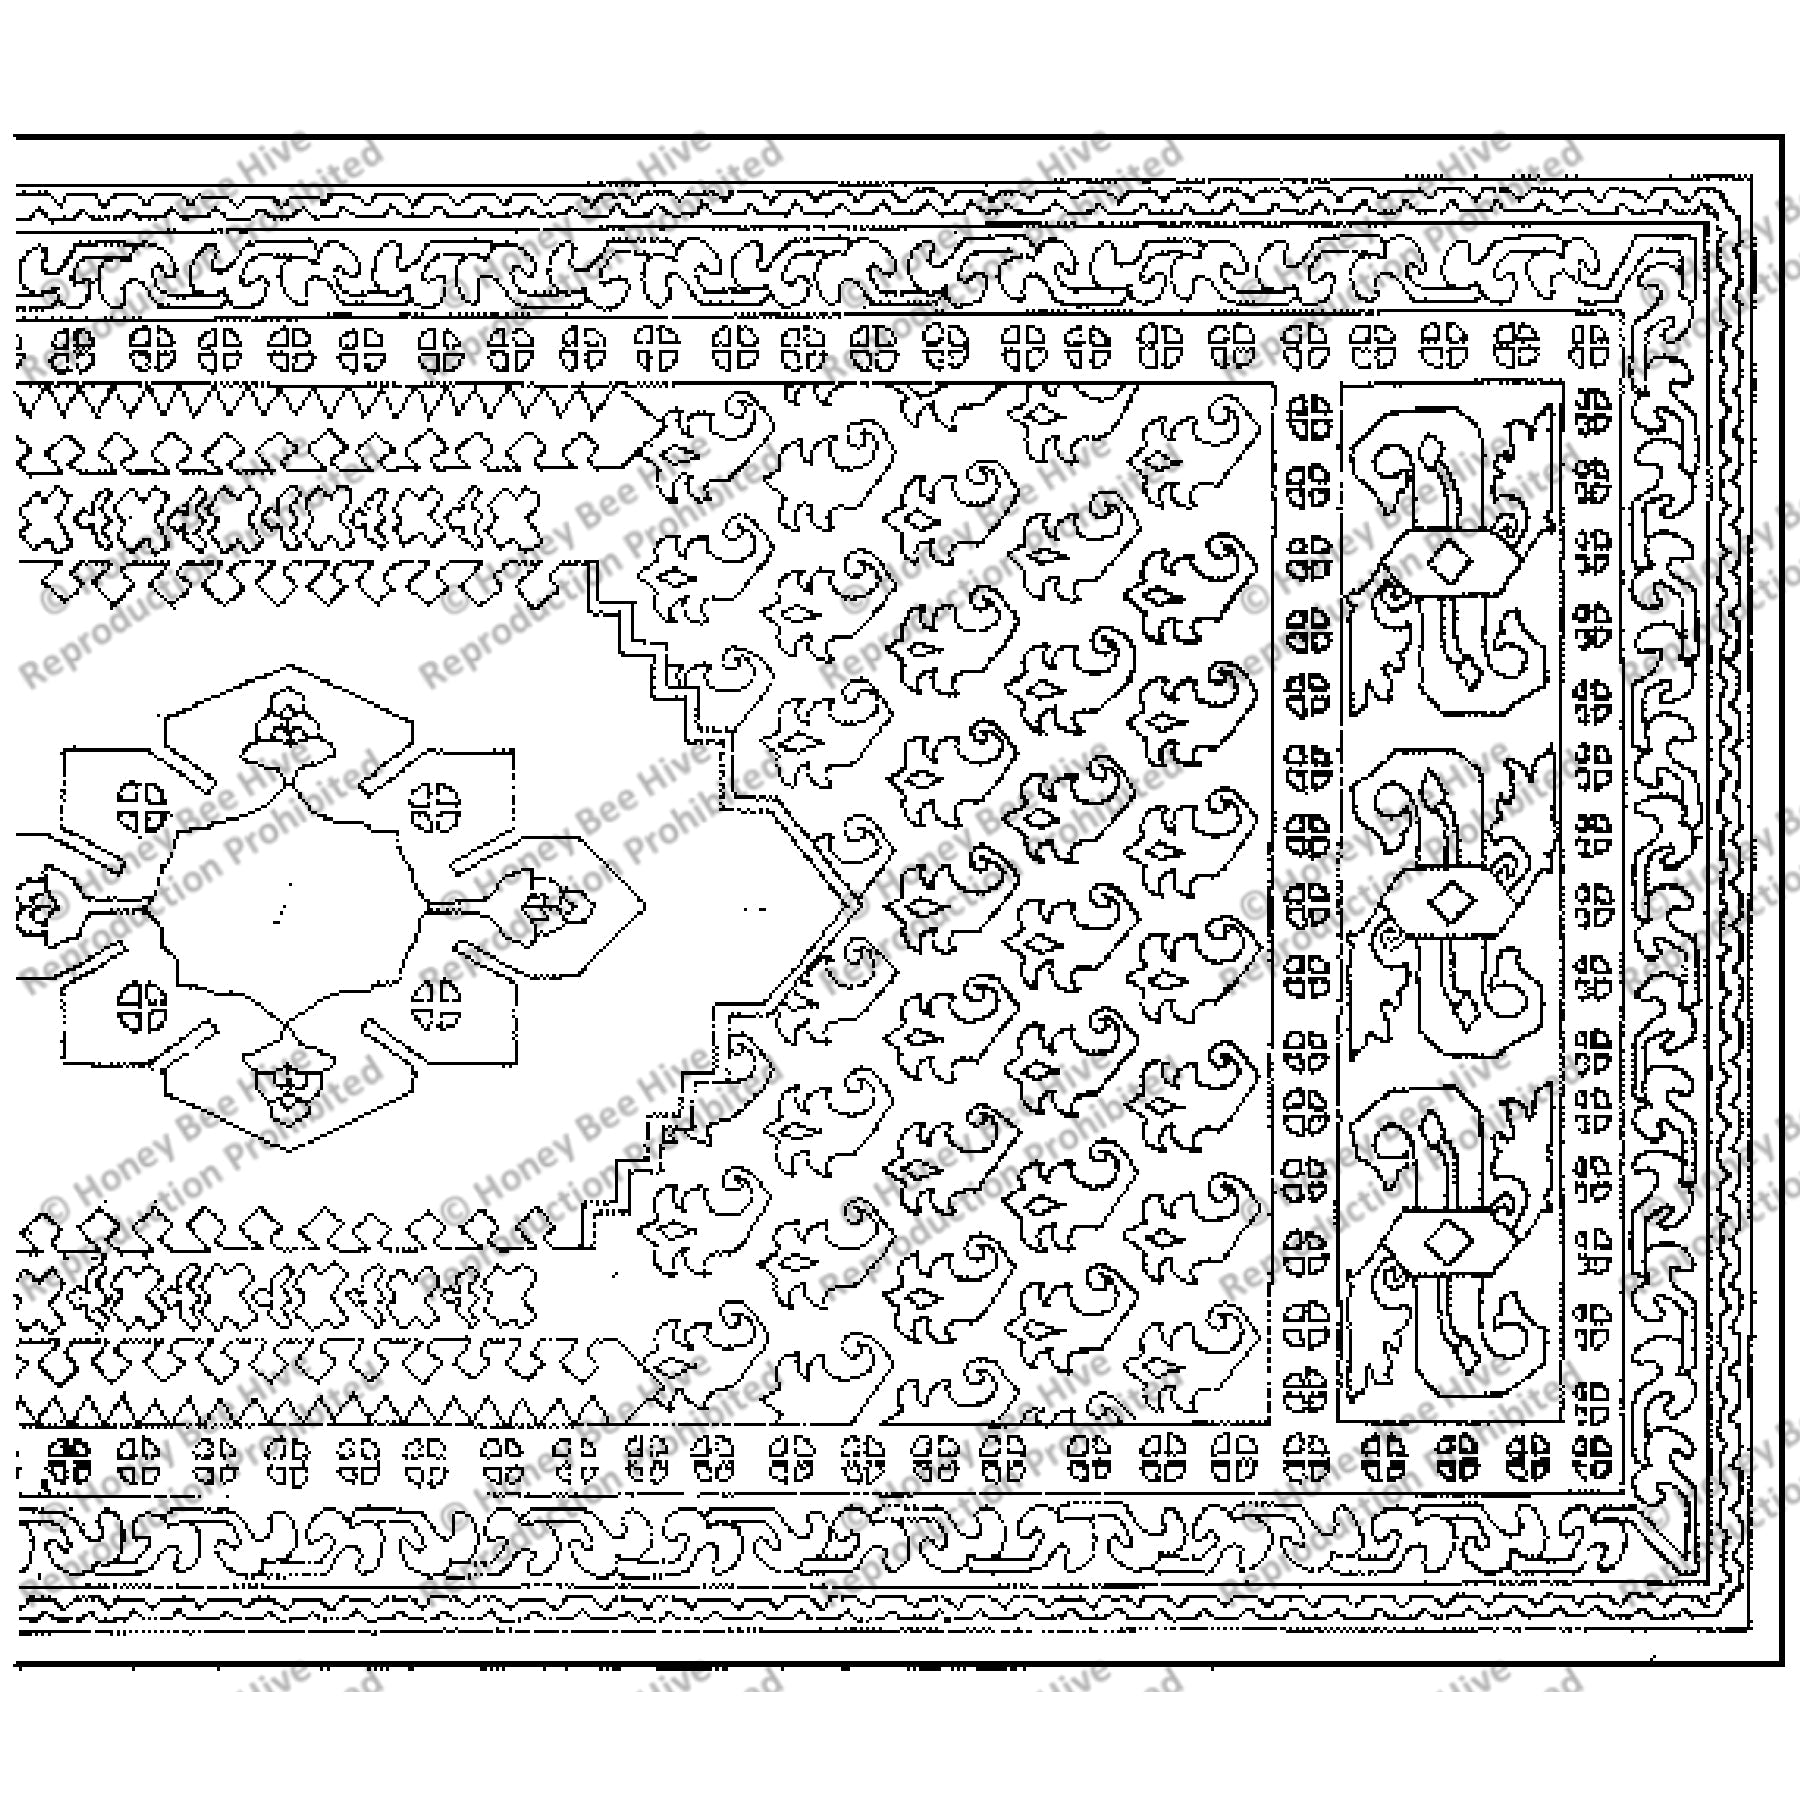 Karabagh, rug hooking pattern